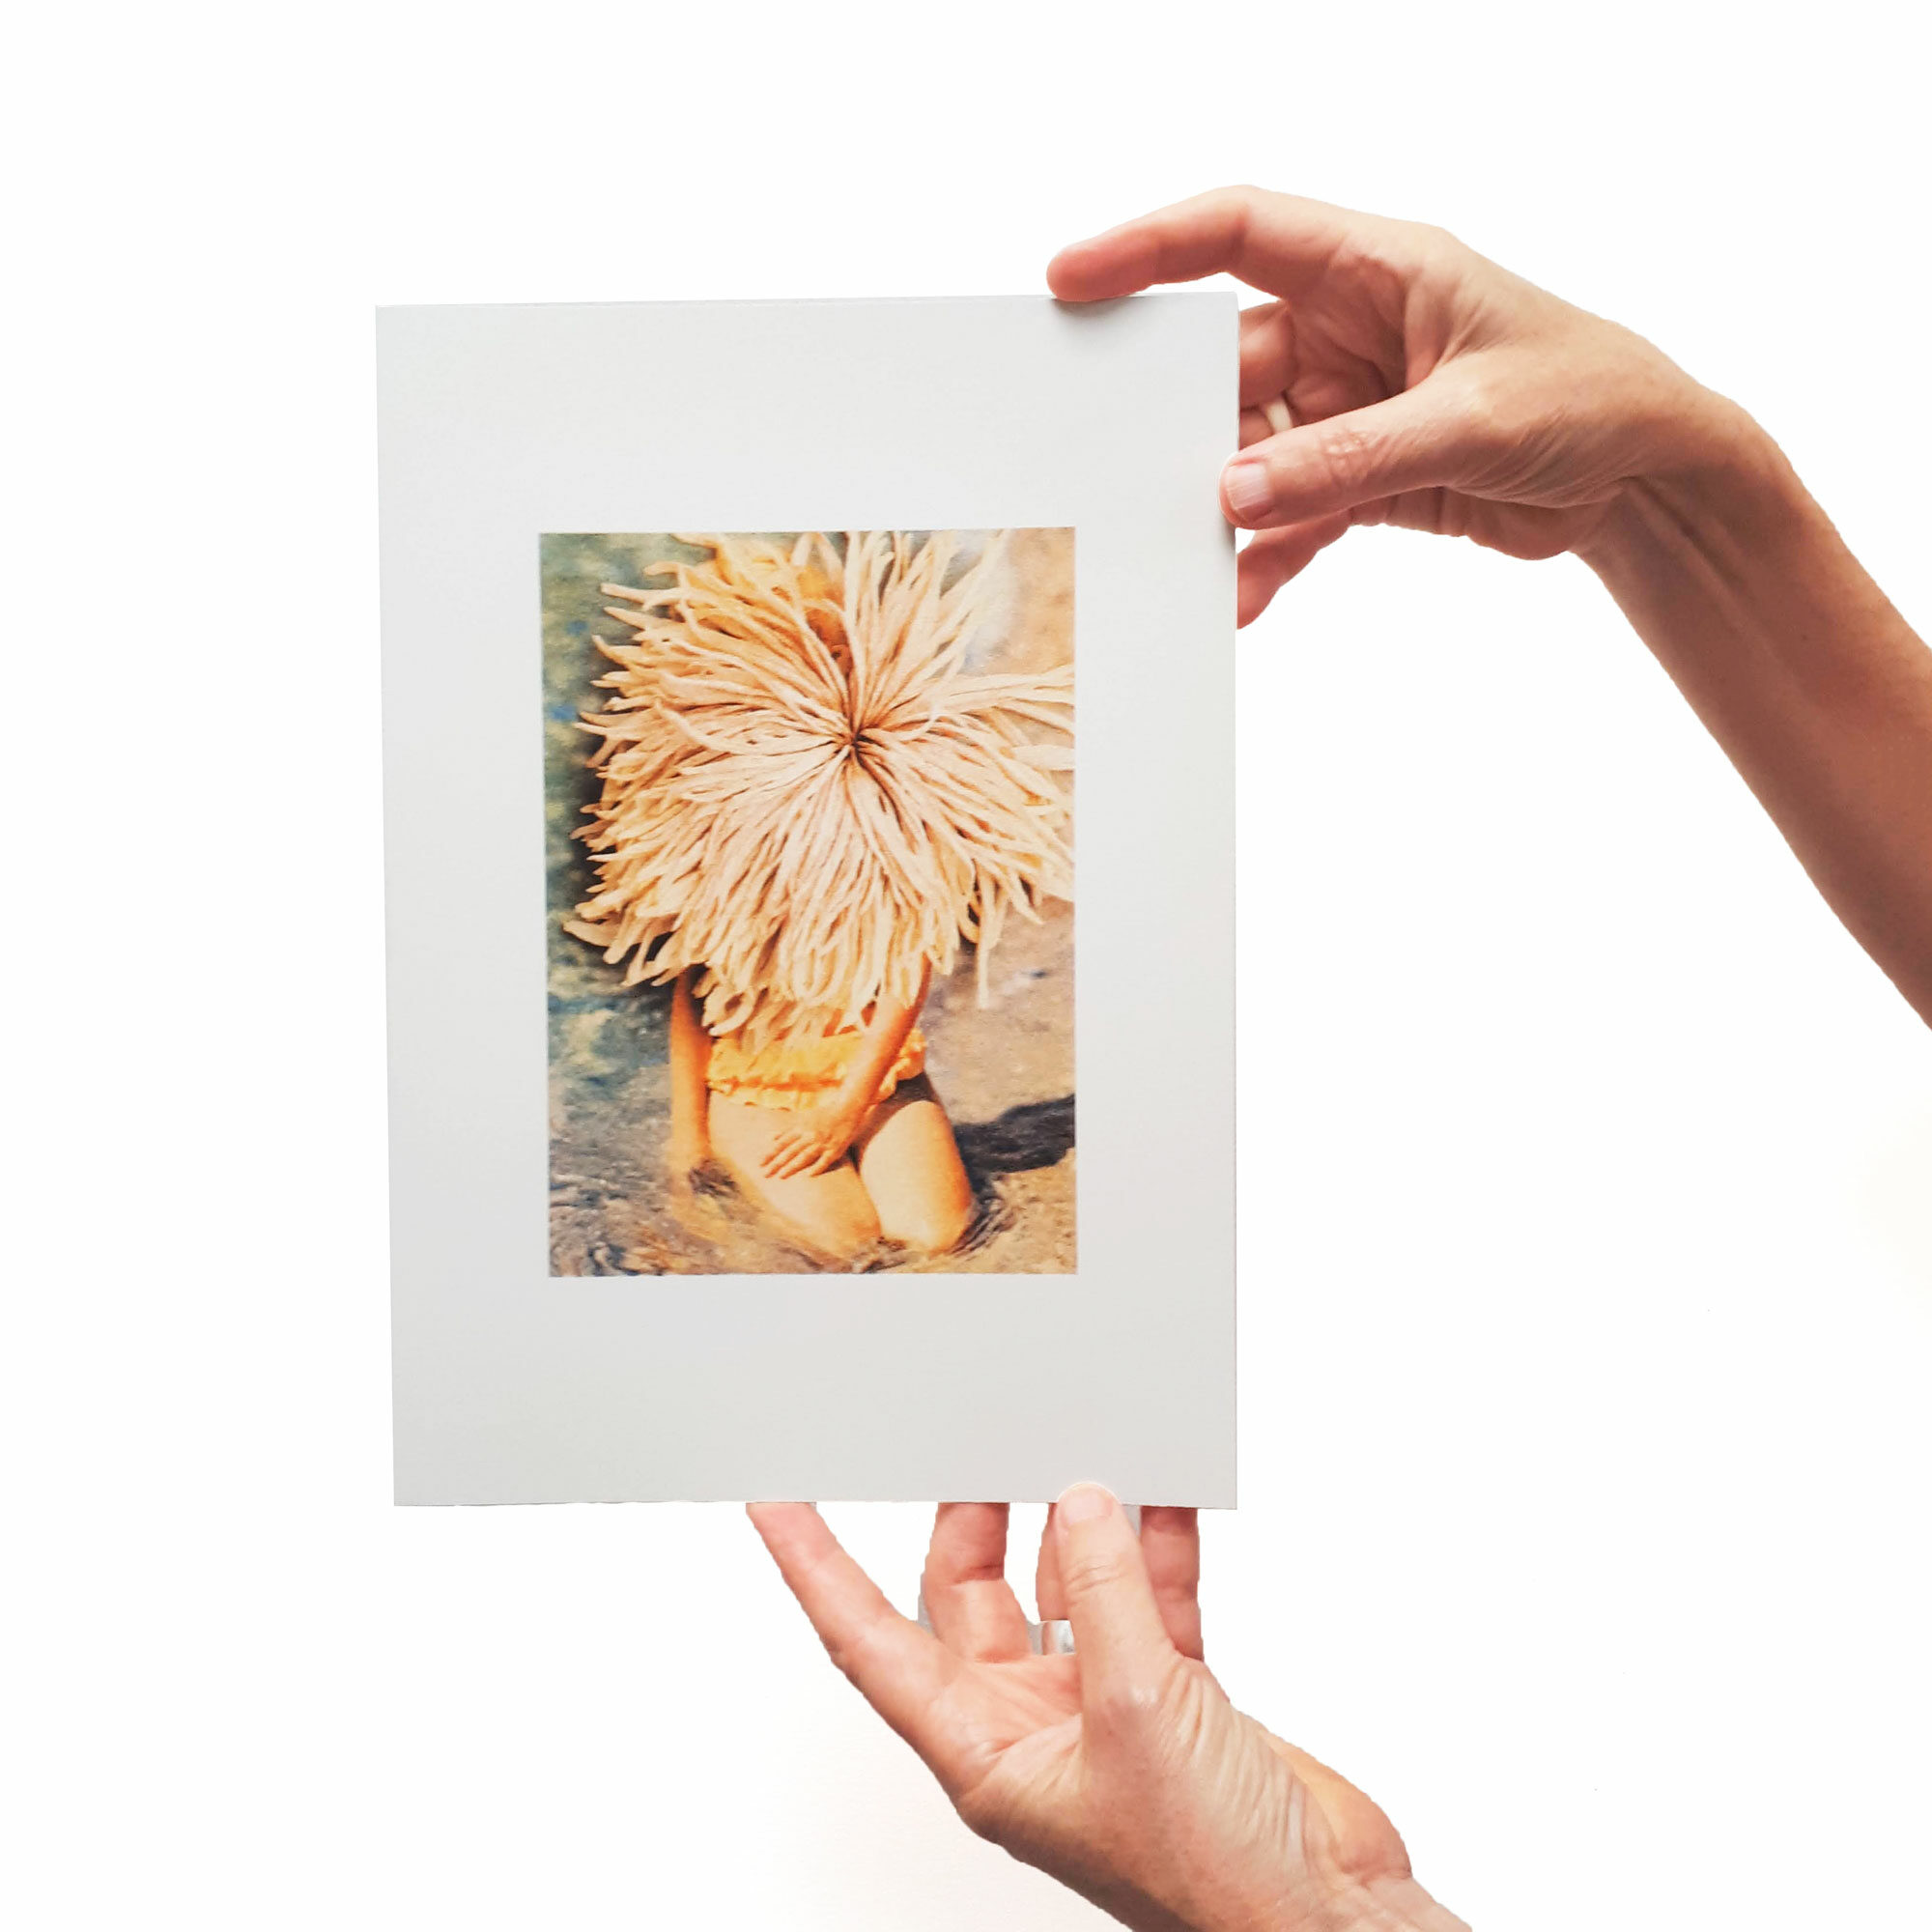 Collage Femme fleur
Édition limitée imprimée en risographie